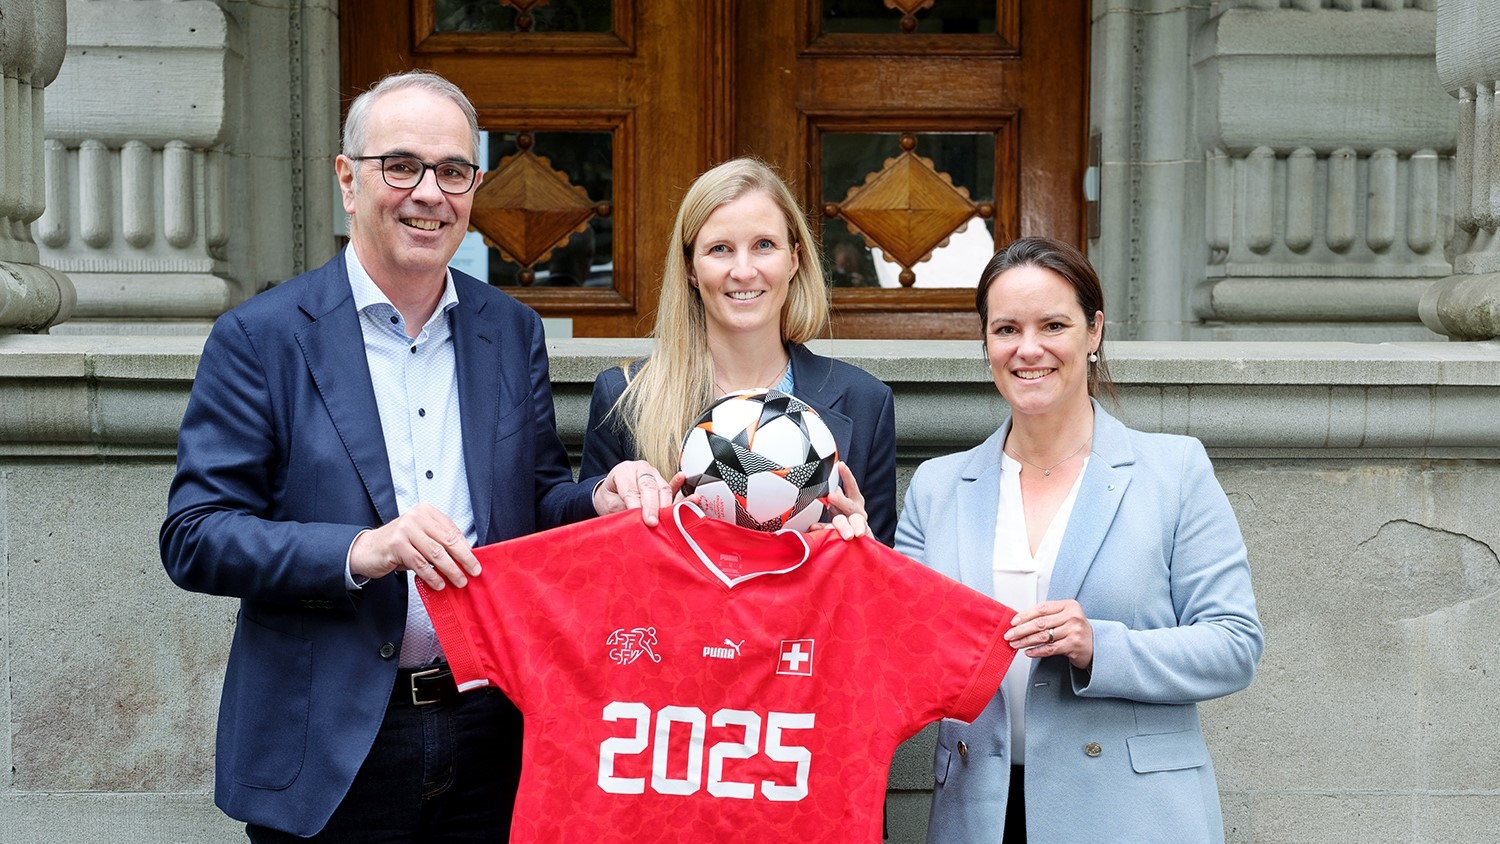 Stadpräsident Beat Züsli, Leevke Stutz und Regierungsrätin Michaela Tschuor halten ein Trikot mit der Aufschrift "2025" und ein Fussball in die Höhe.